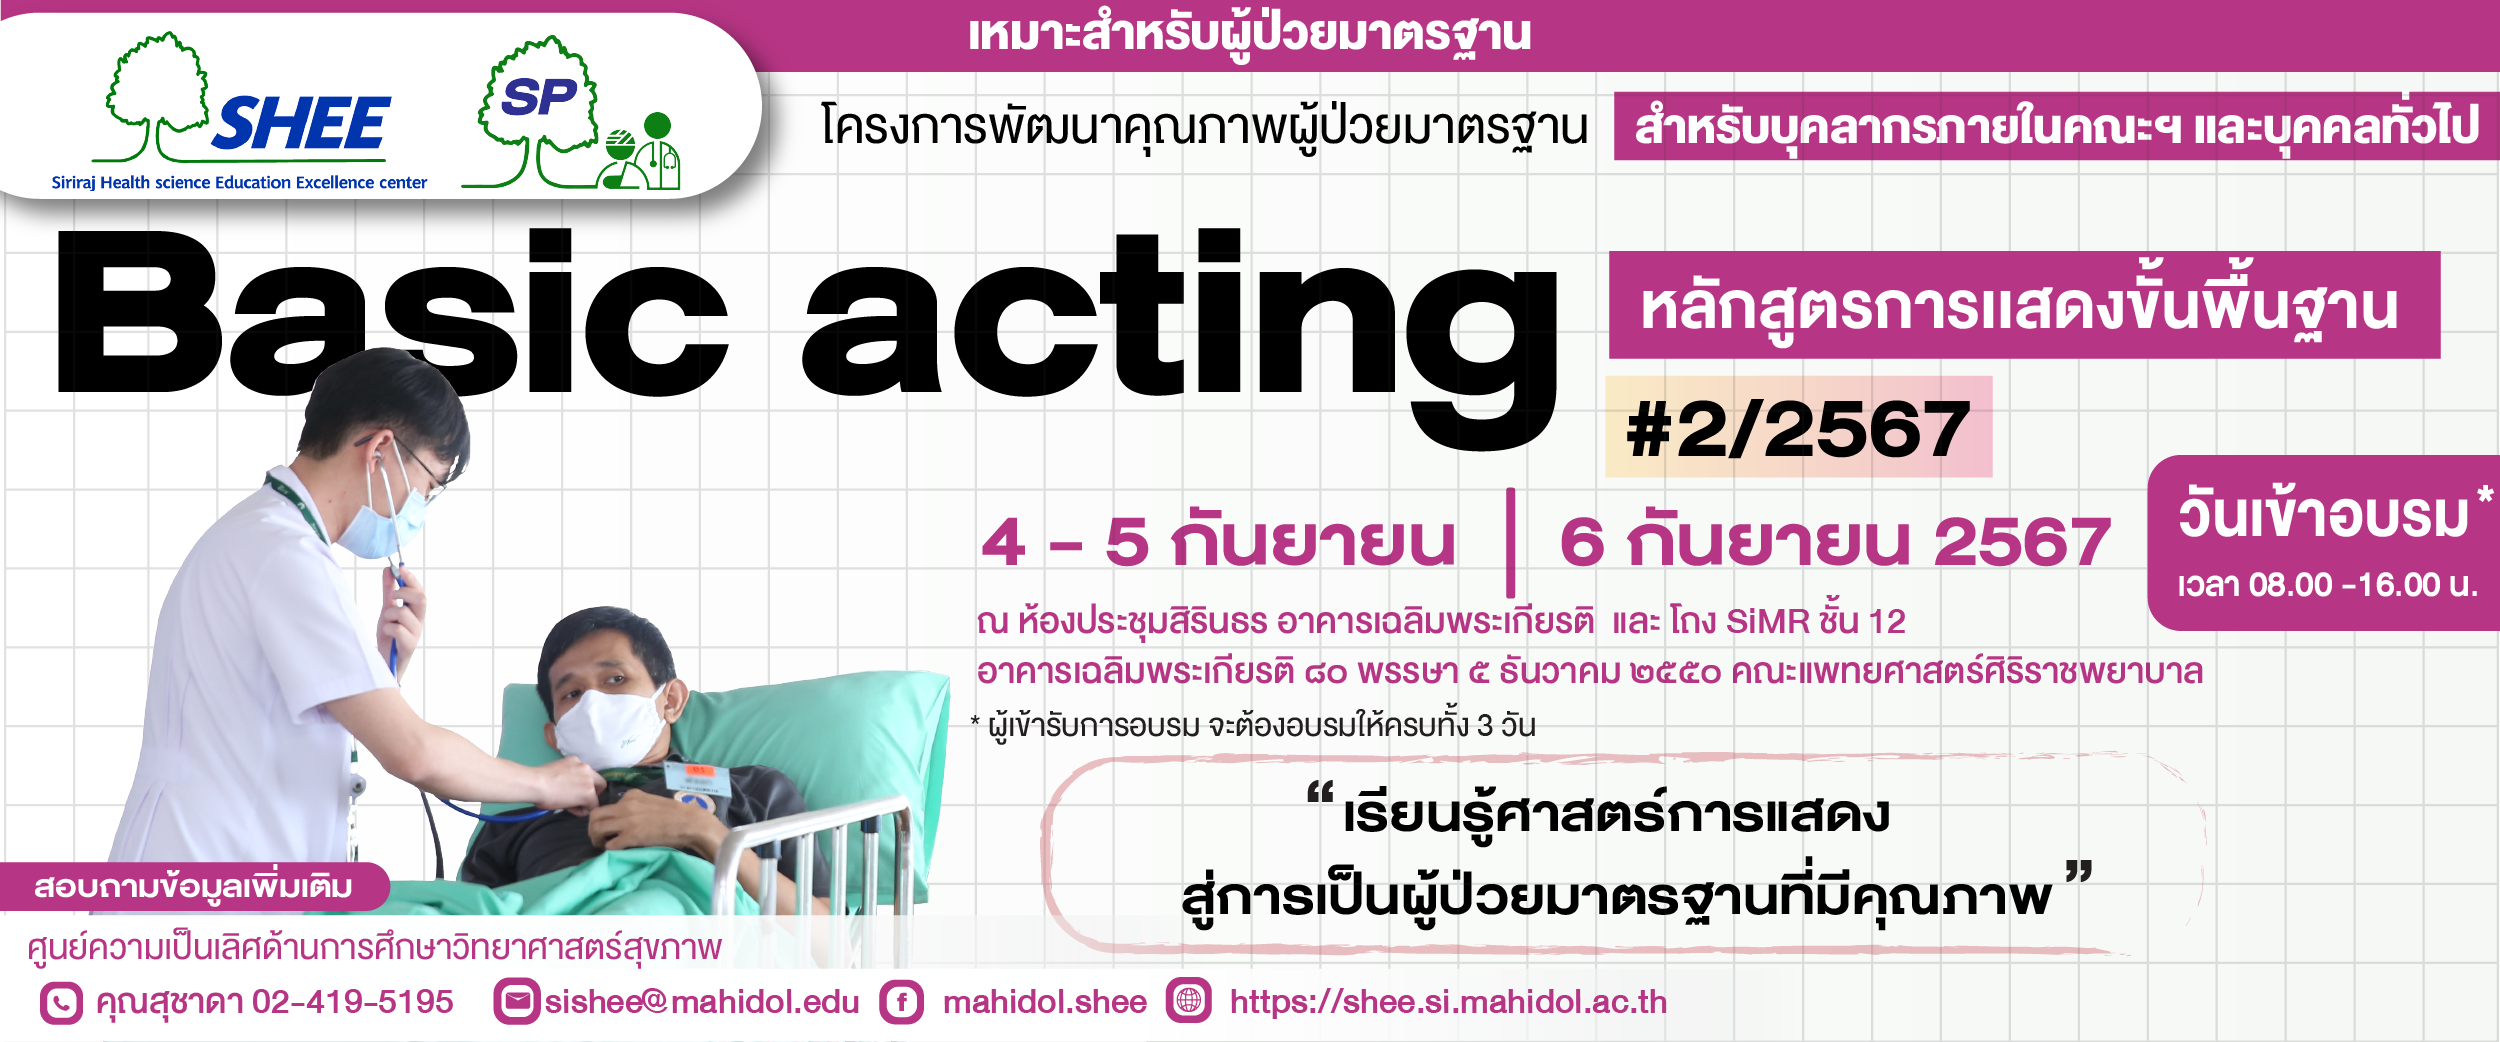 หลักสูตรการแสดงพื้นฐาน (Basic acting) รุ่นที่ 2 ปี 2567 - สำหรับบุคลากรภายในและภายนอกคณะฯ